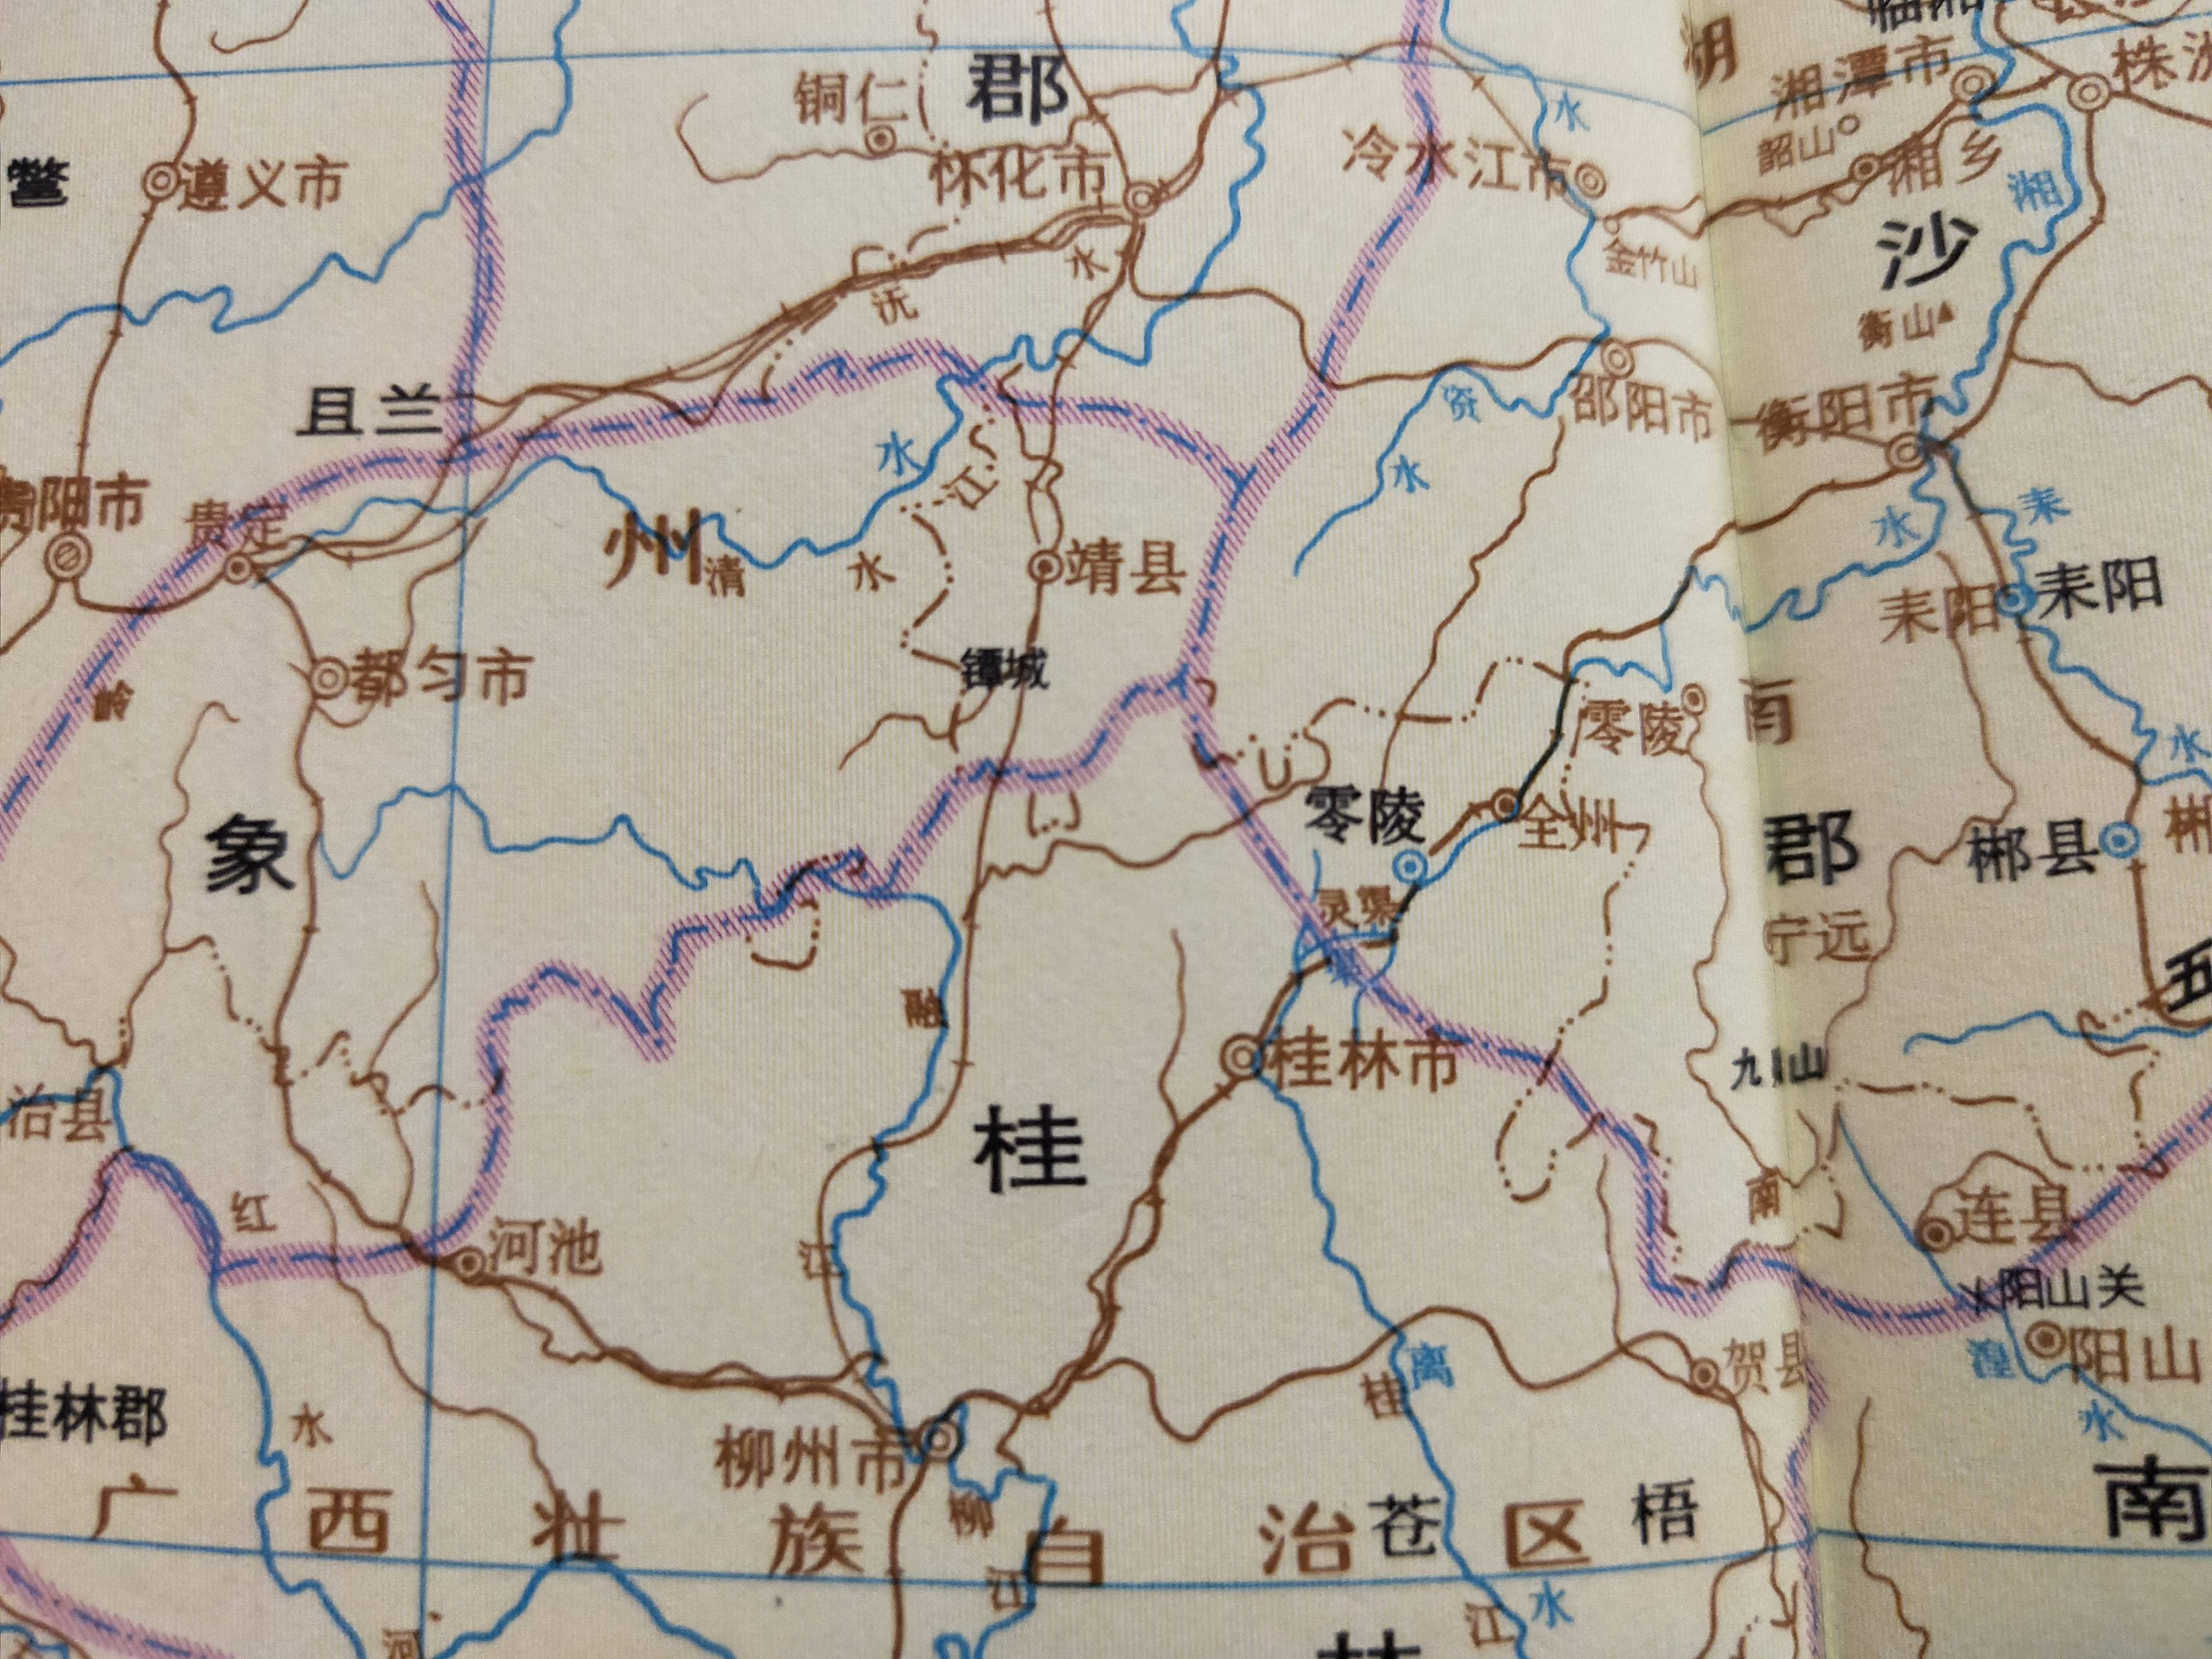 古地名演变:广西桂林古代地名及区划演变过程